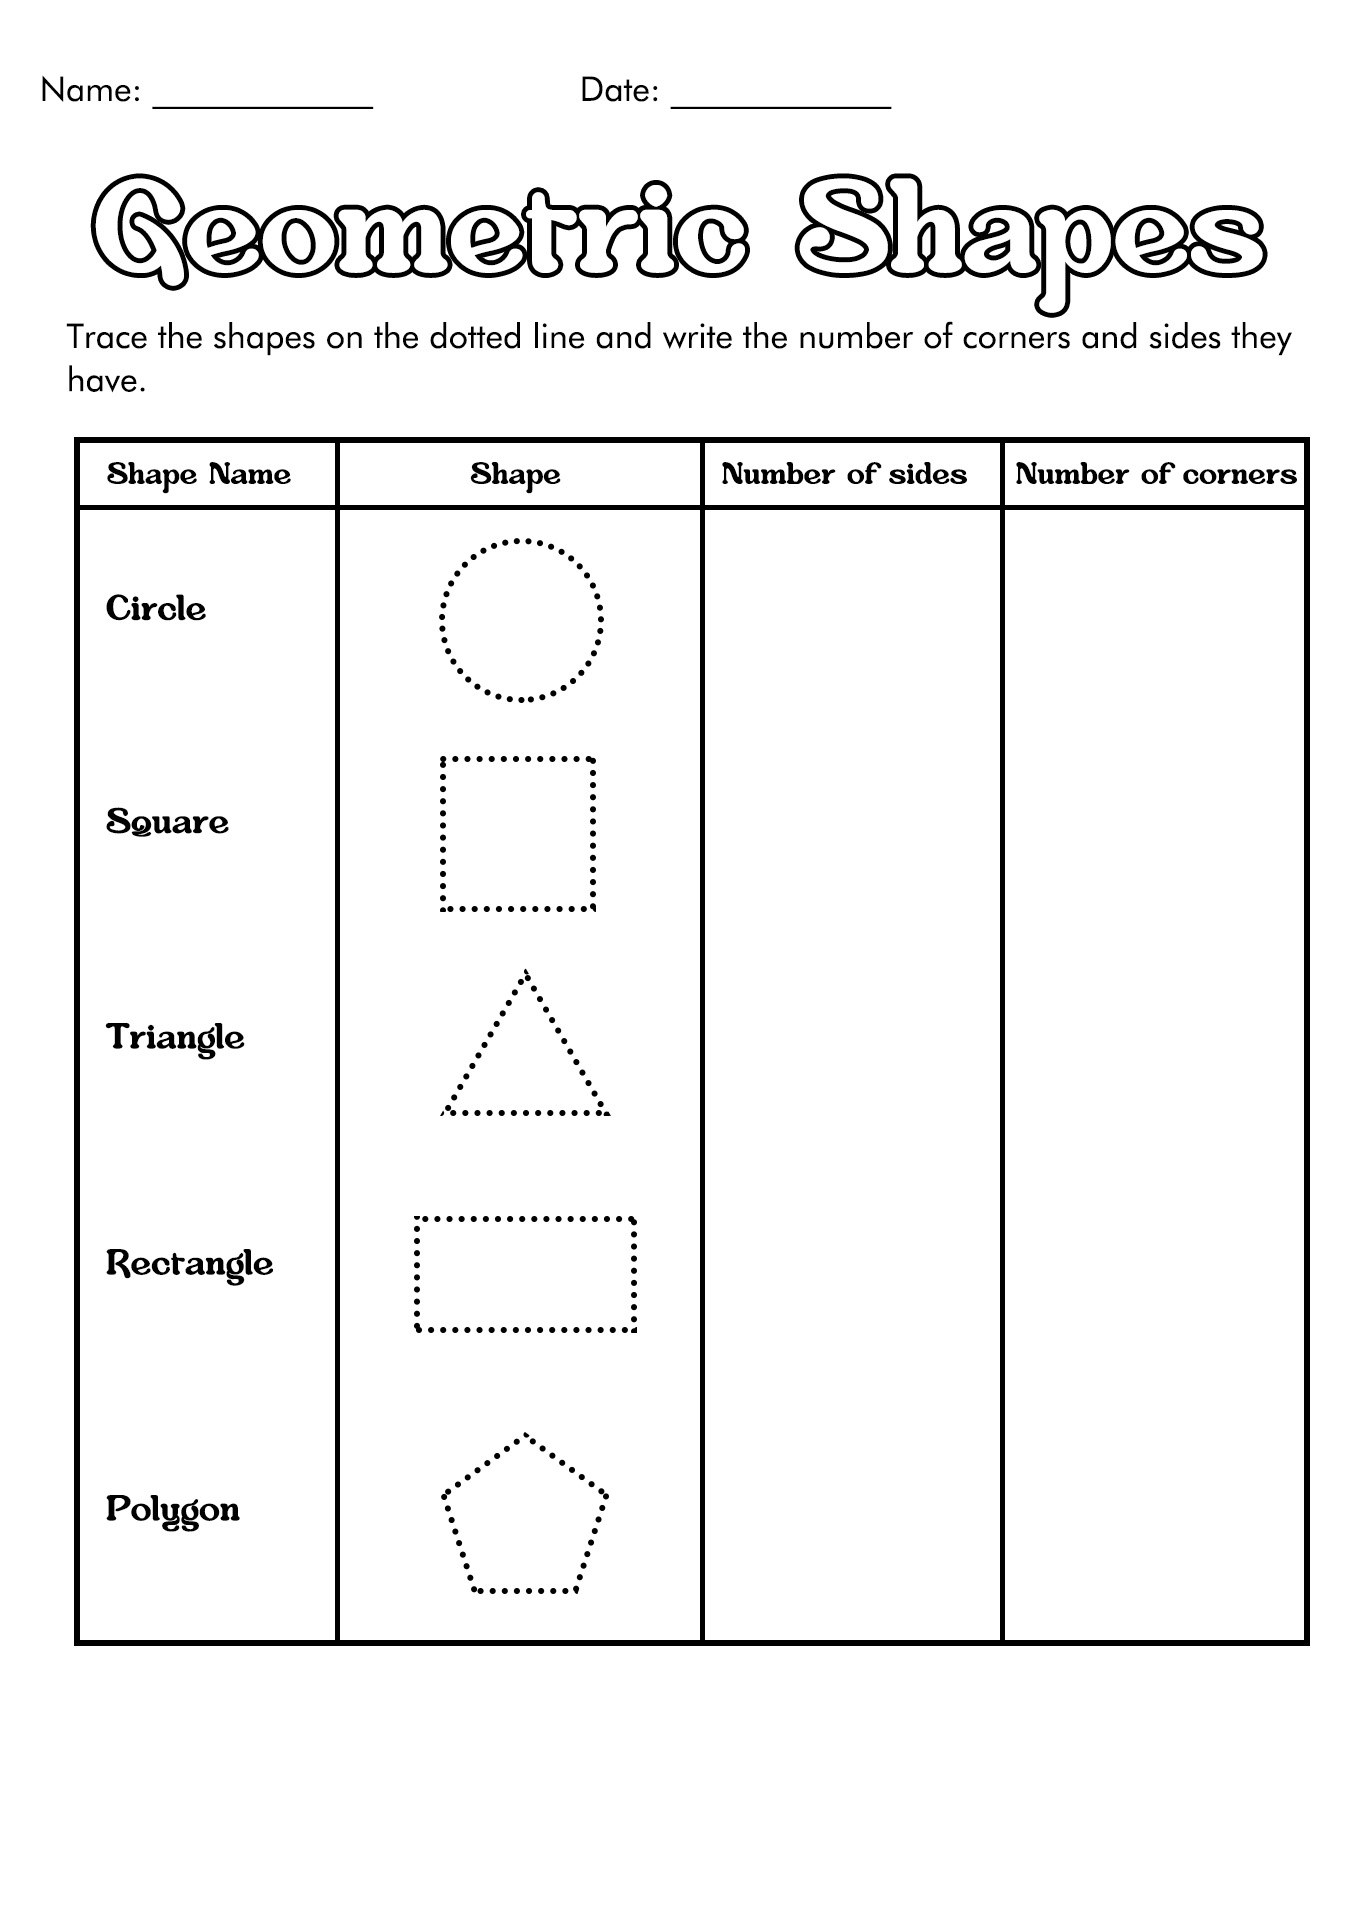 Basic Geometric Shapes Worksheets Image